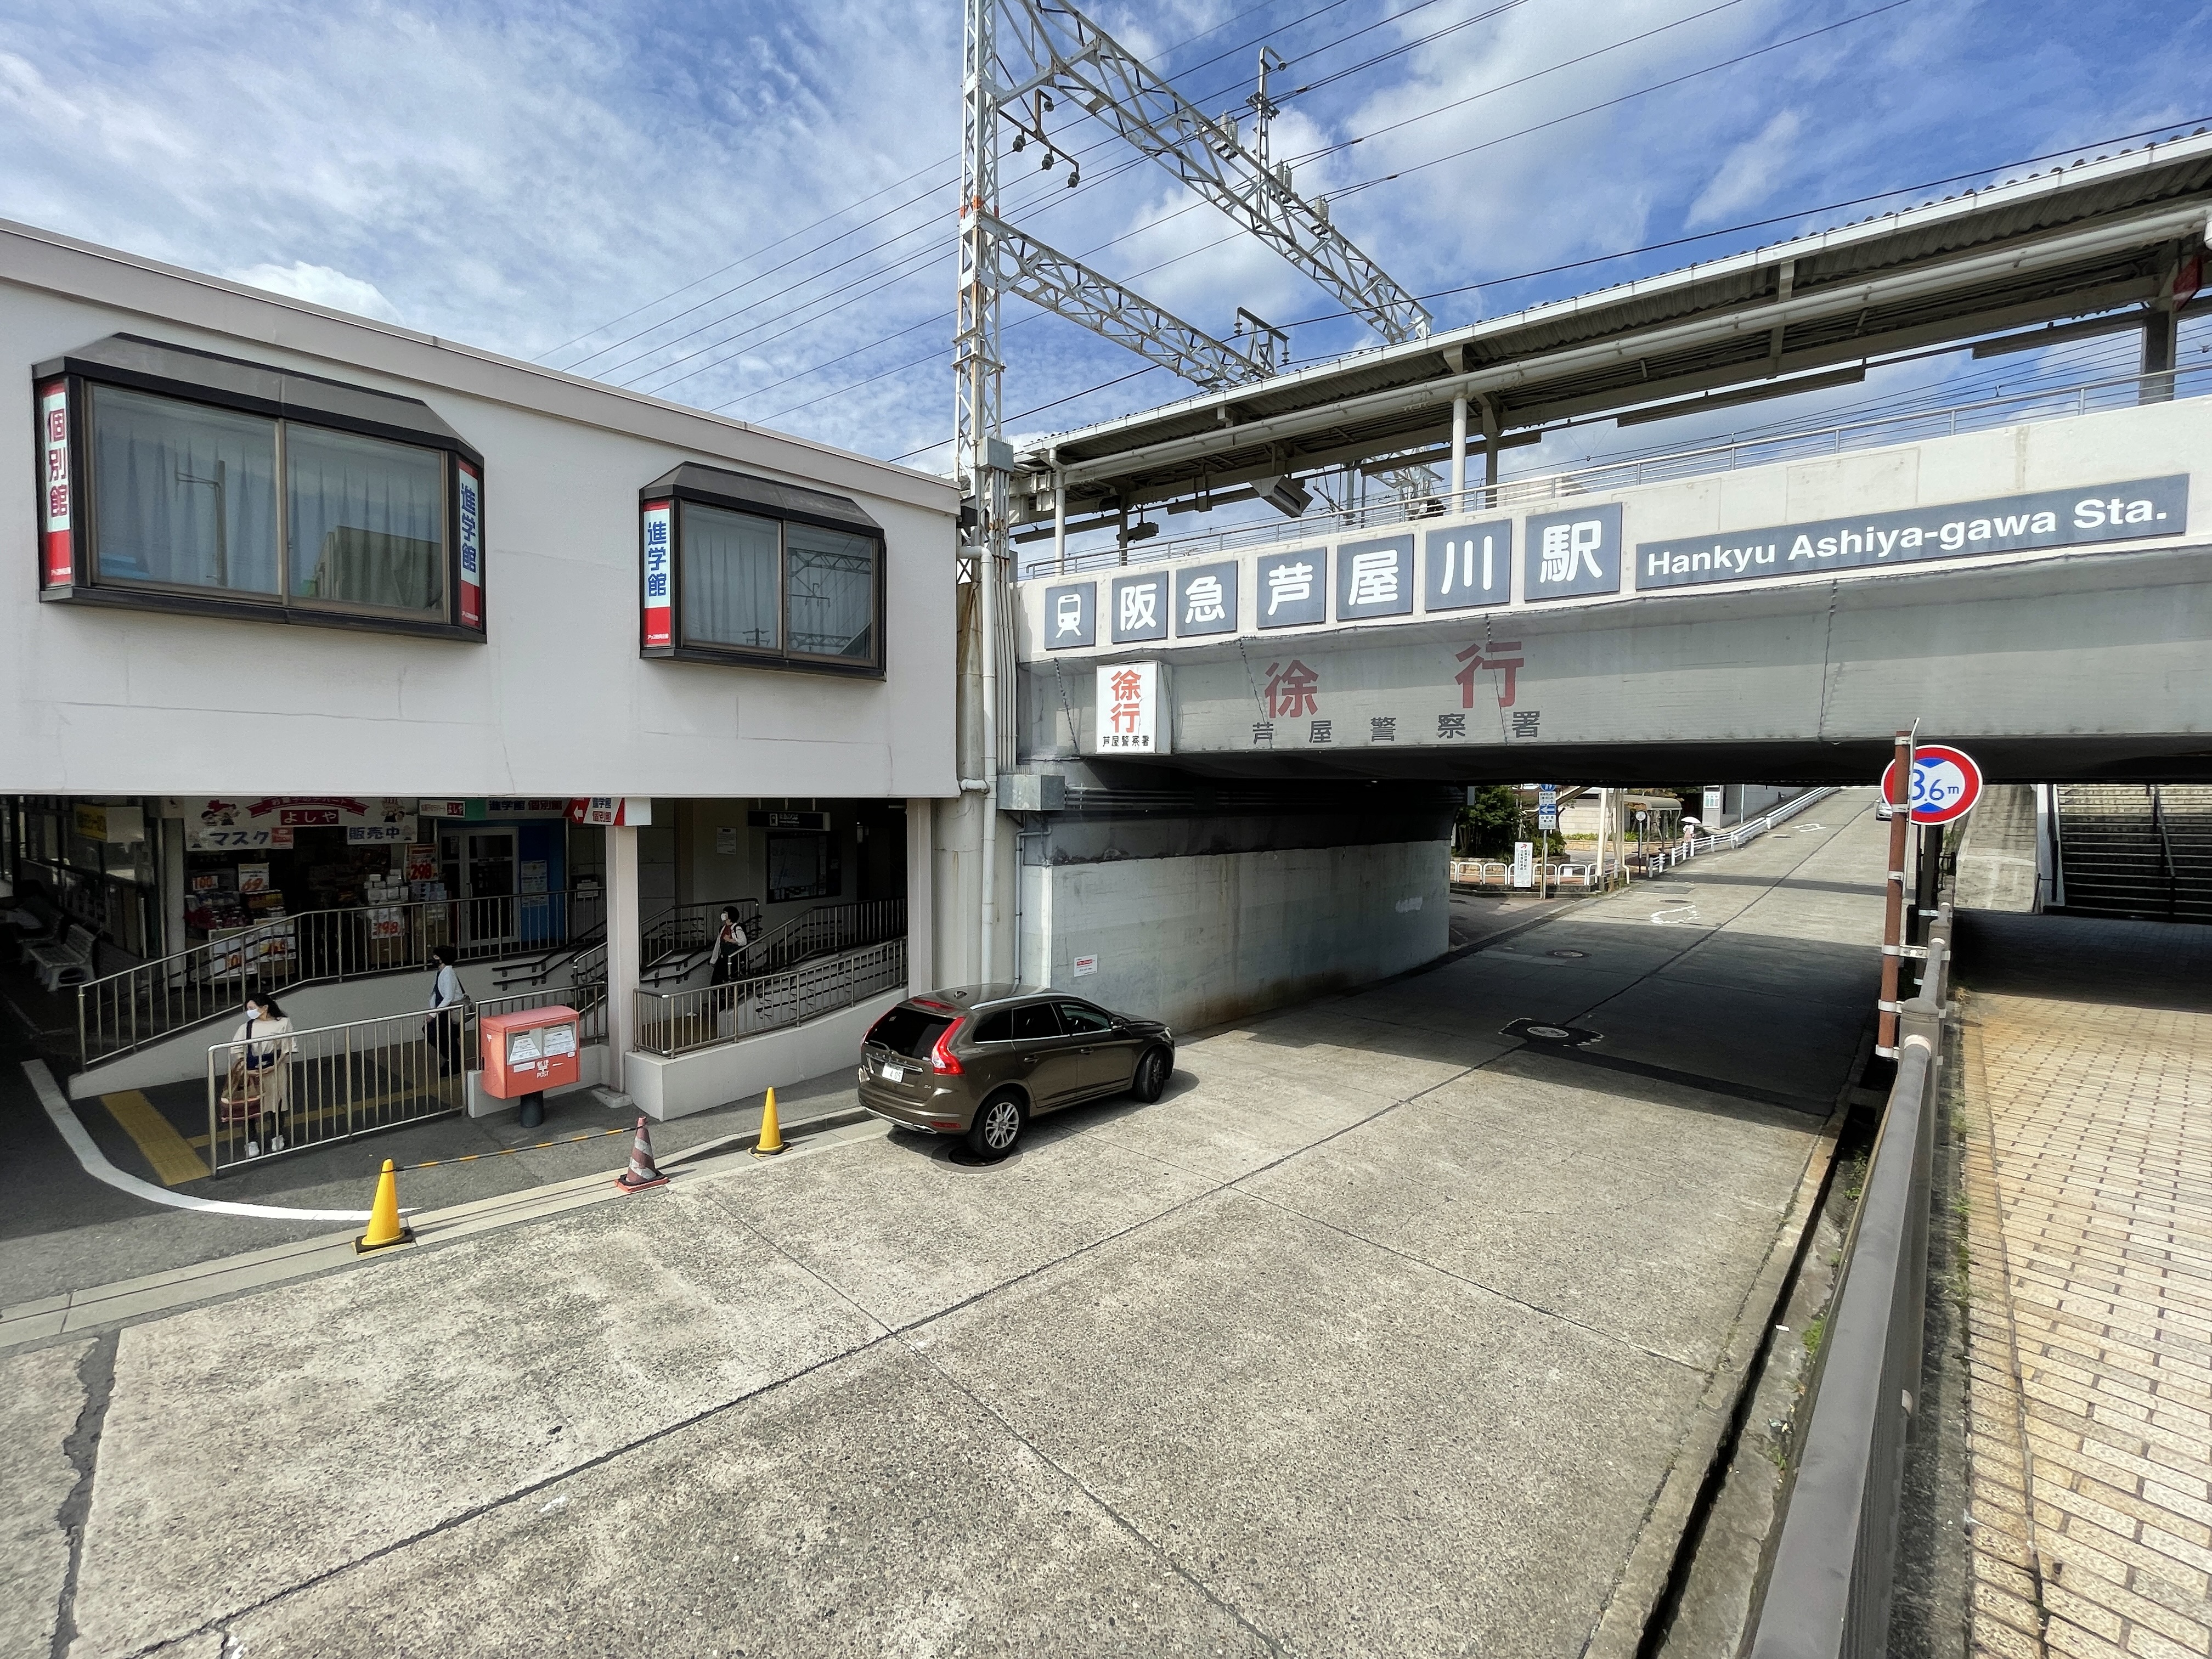 最寄り阪急電鉄「芦屋川」駅<br />
その名を駅名に冠している“芦屋川”が直ぐそばを流れております。